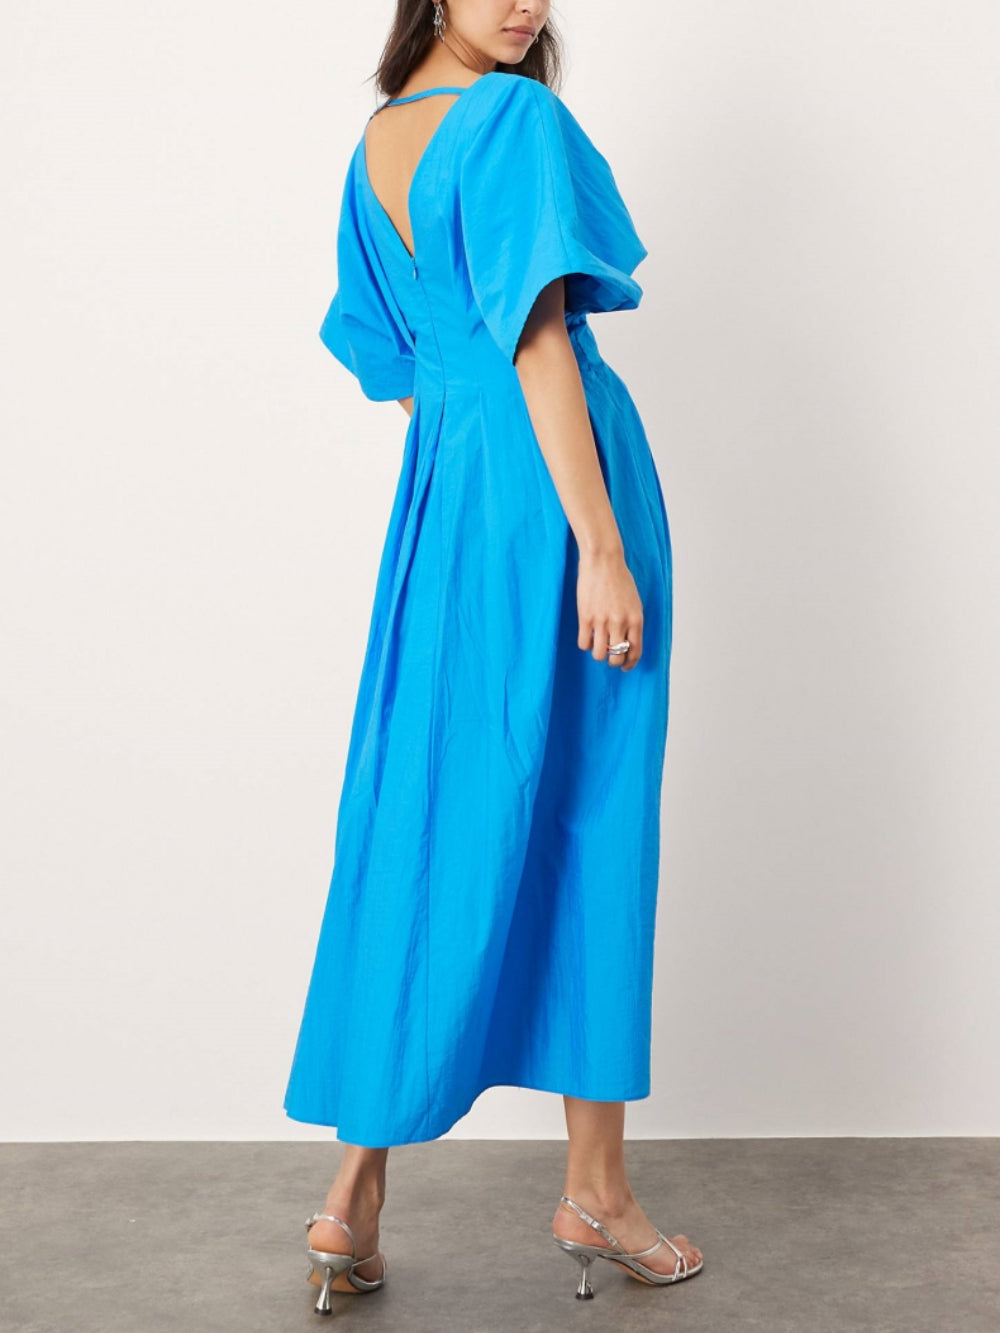 Μίντι κοντομάνικο φόρεμα με λαιμόκοψη σε μπλε χρώμα